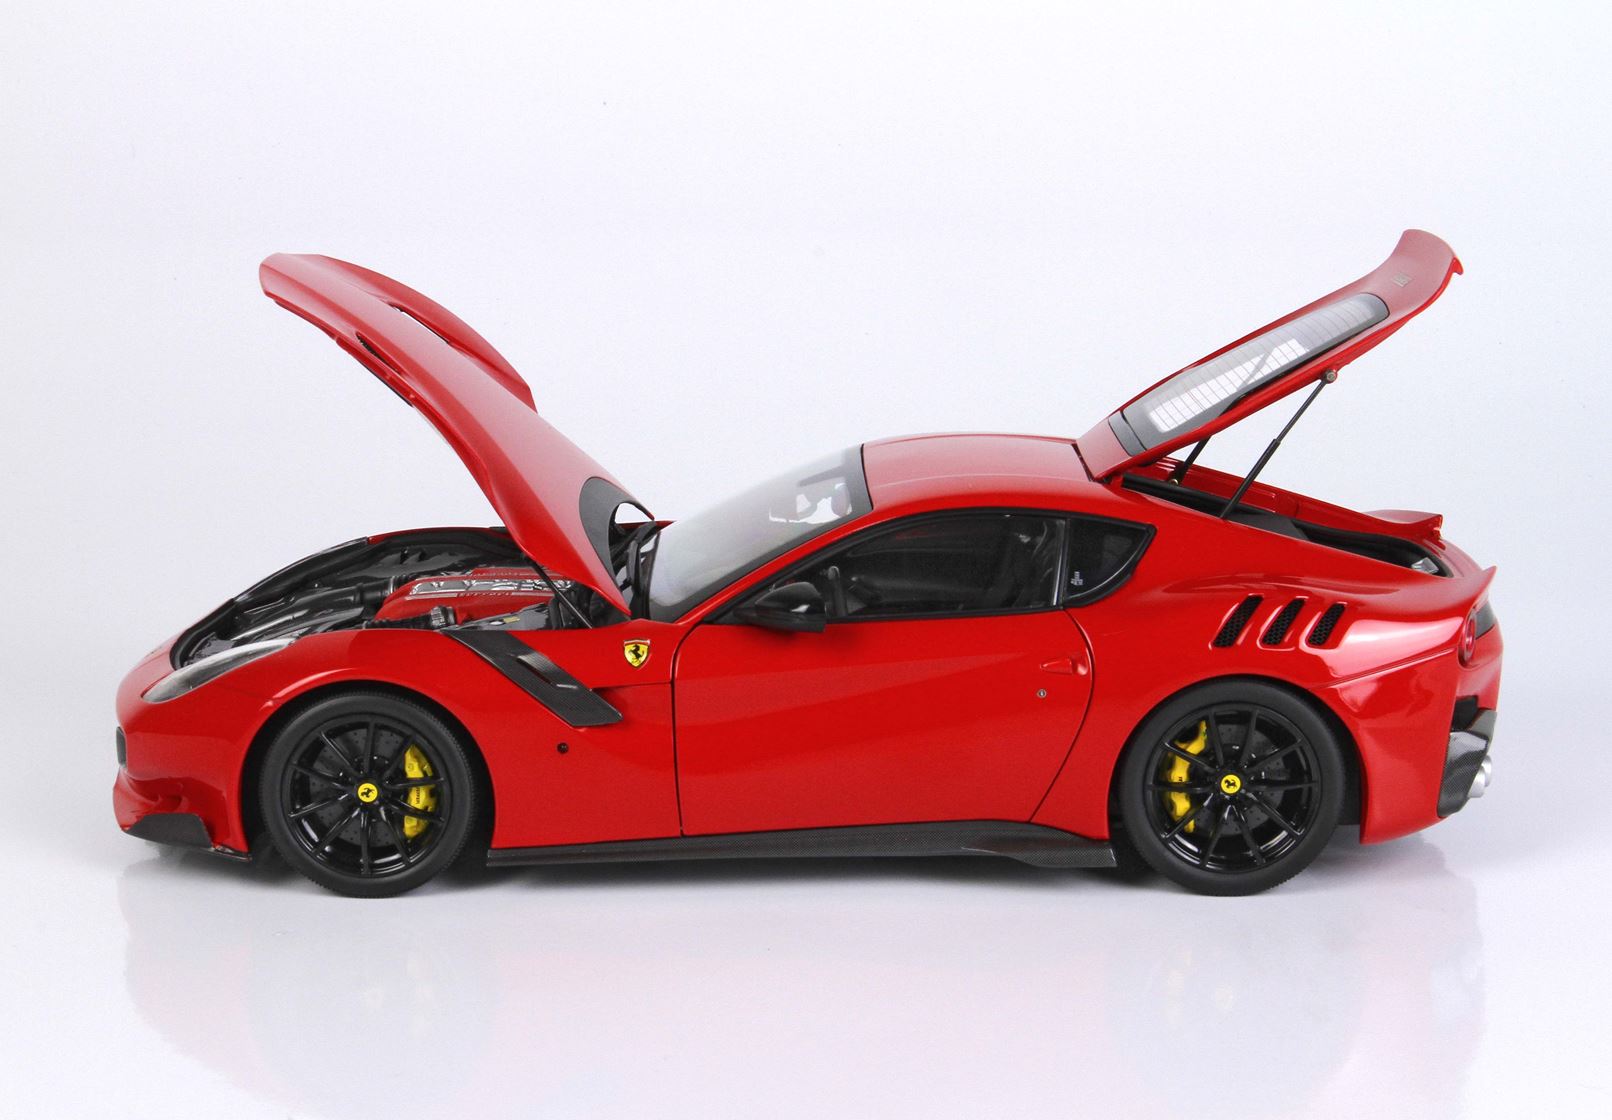 BBR 1:18 scale Ferrari F12 TDF Rosso Corsa